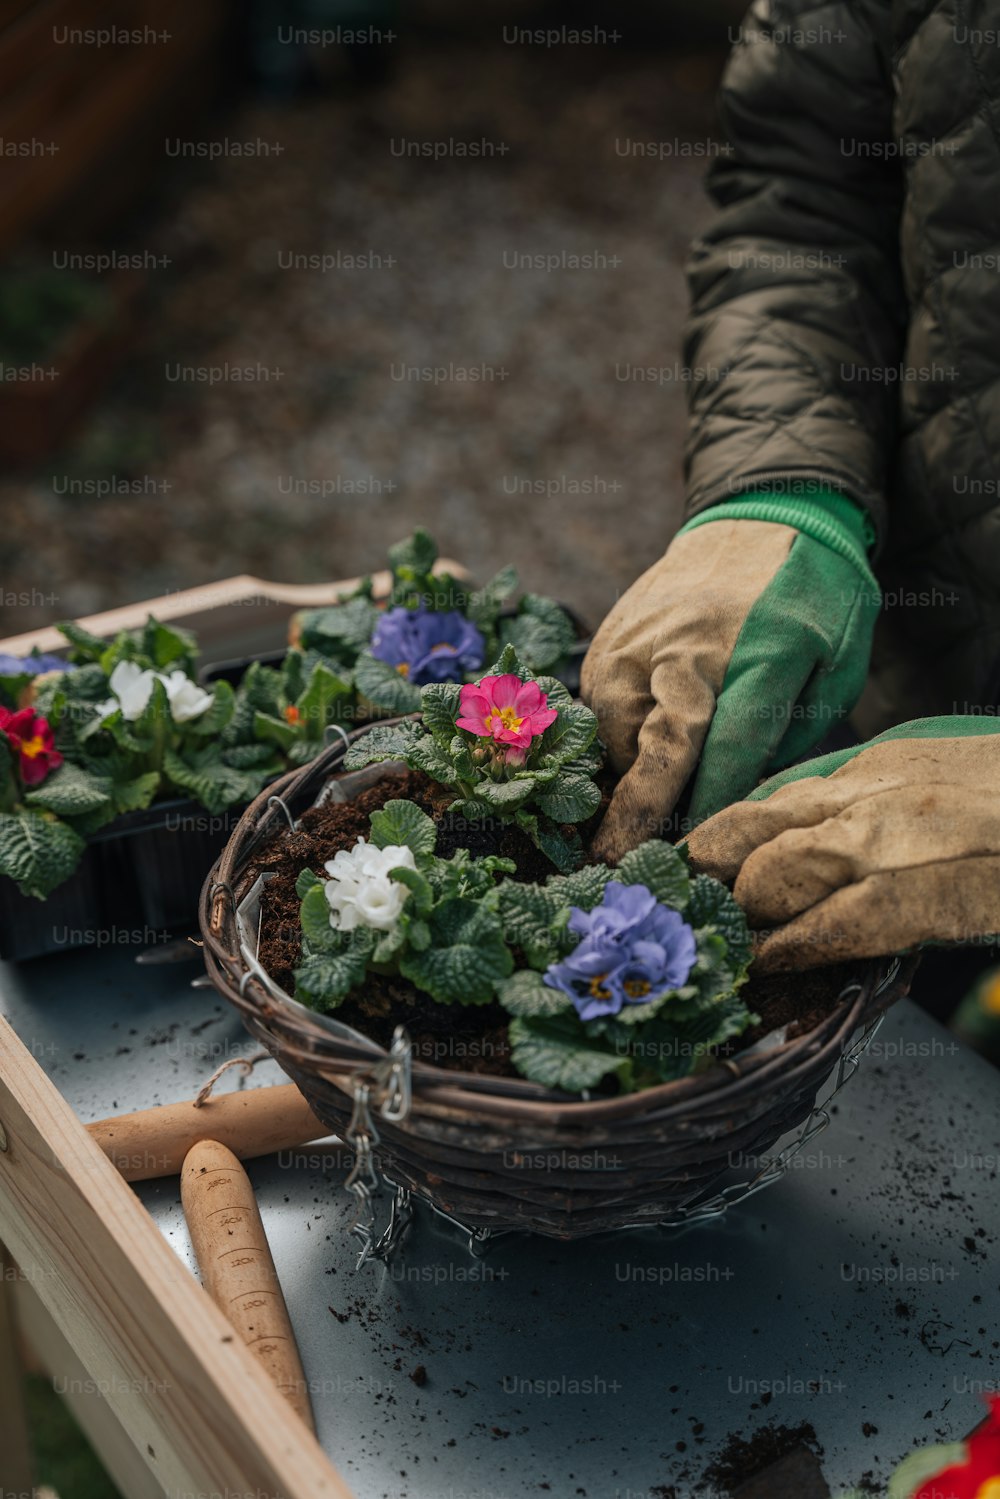 une personne portant des gants et des gants de jardinage met des fleurs dans un panier